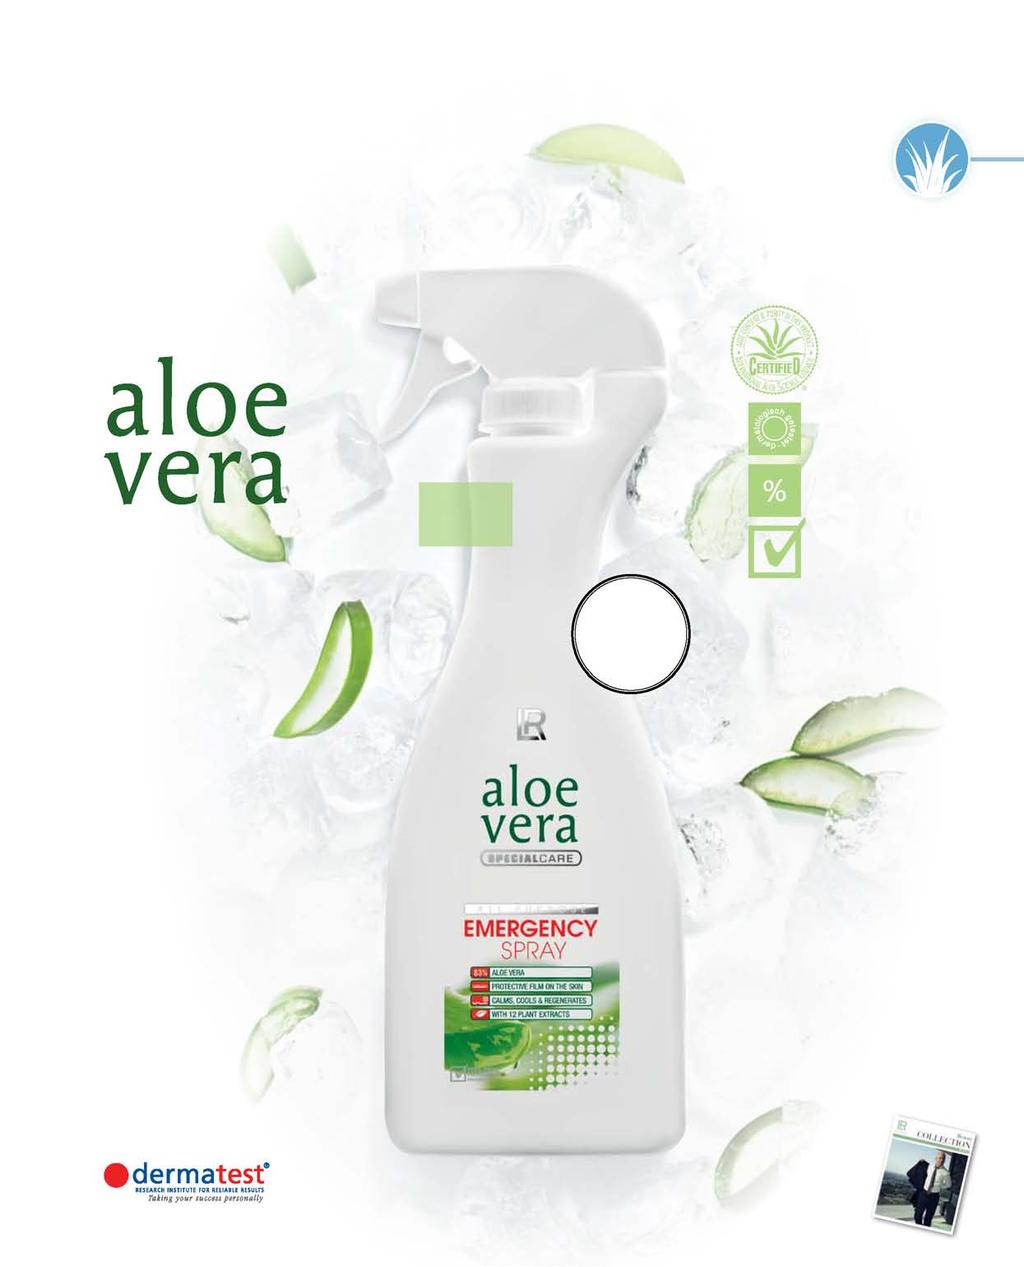 Aloë Vera Verzorging 49 Het multitalent: het beste uit Aloë Vera en elf plantenextracten uitstekende kwaliteit en gecertificeerde afnamebron van de grondstoffen dermatologisch bevestigde